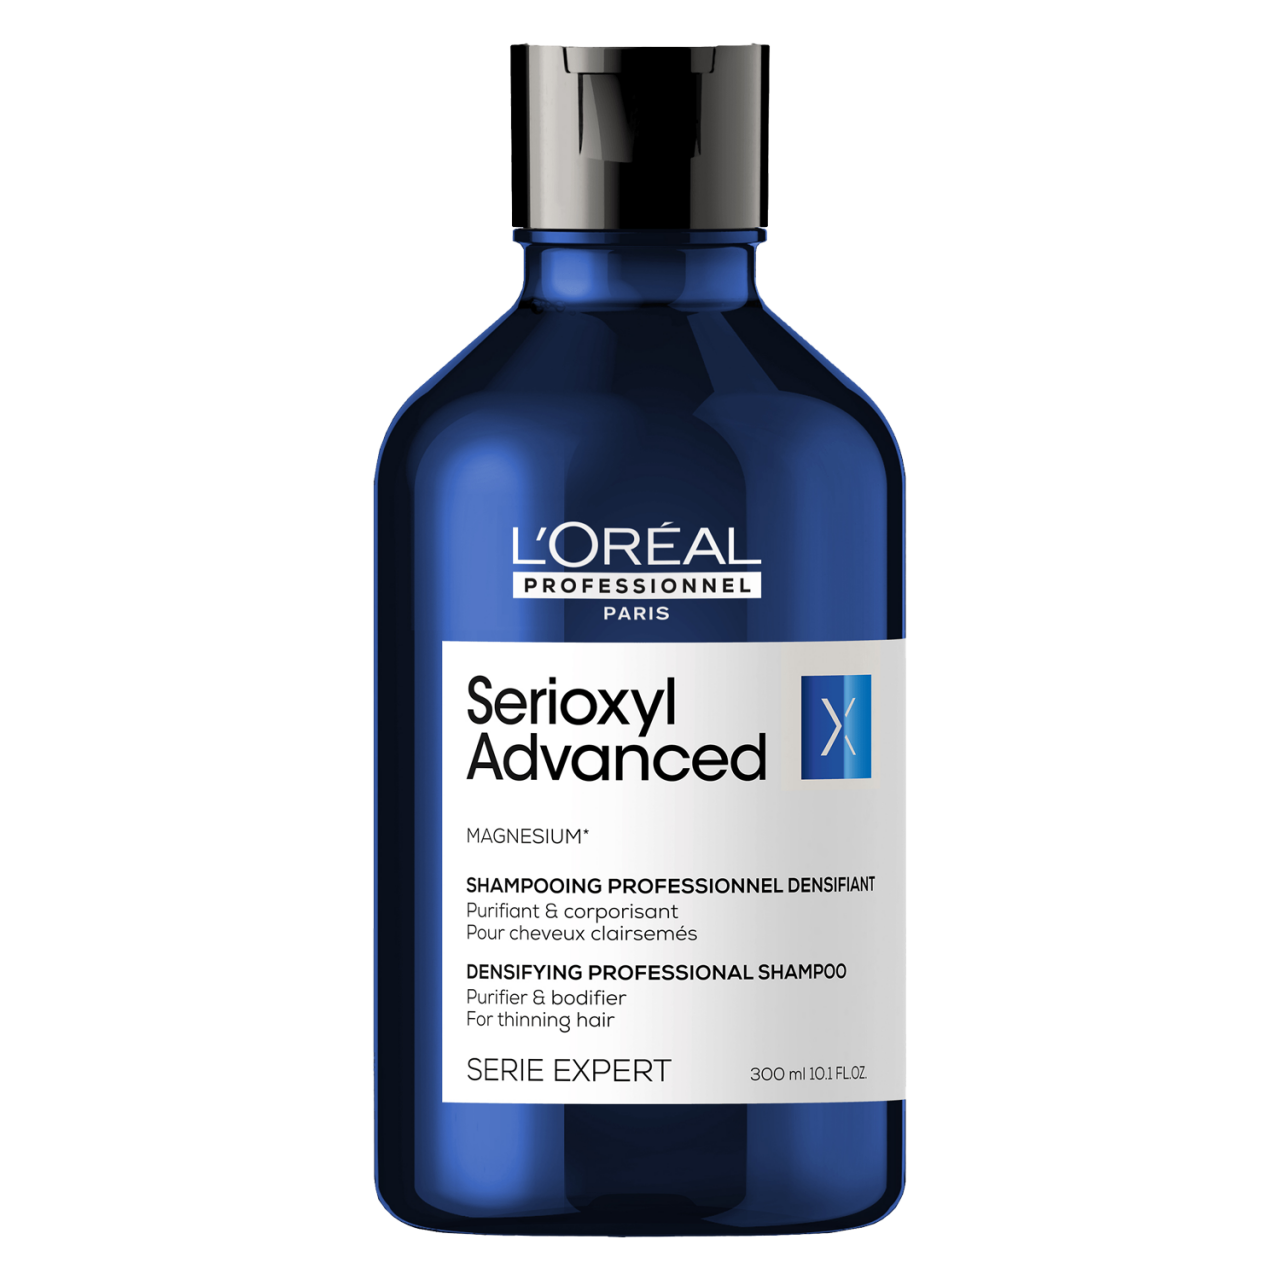 Serioxyl - Advanced Anti Hair-Thinning Purifier & Bodifier Shampoo von L'Oréal Professionnel